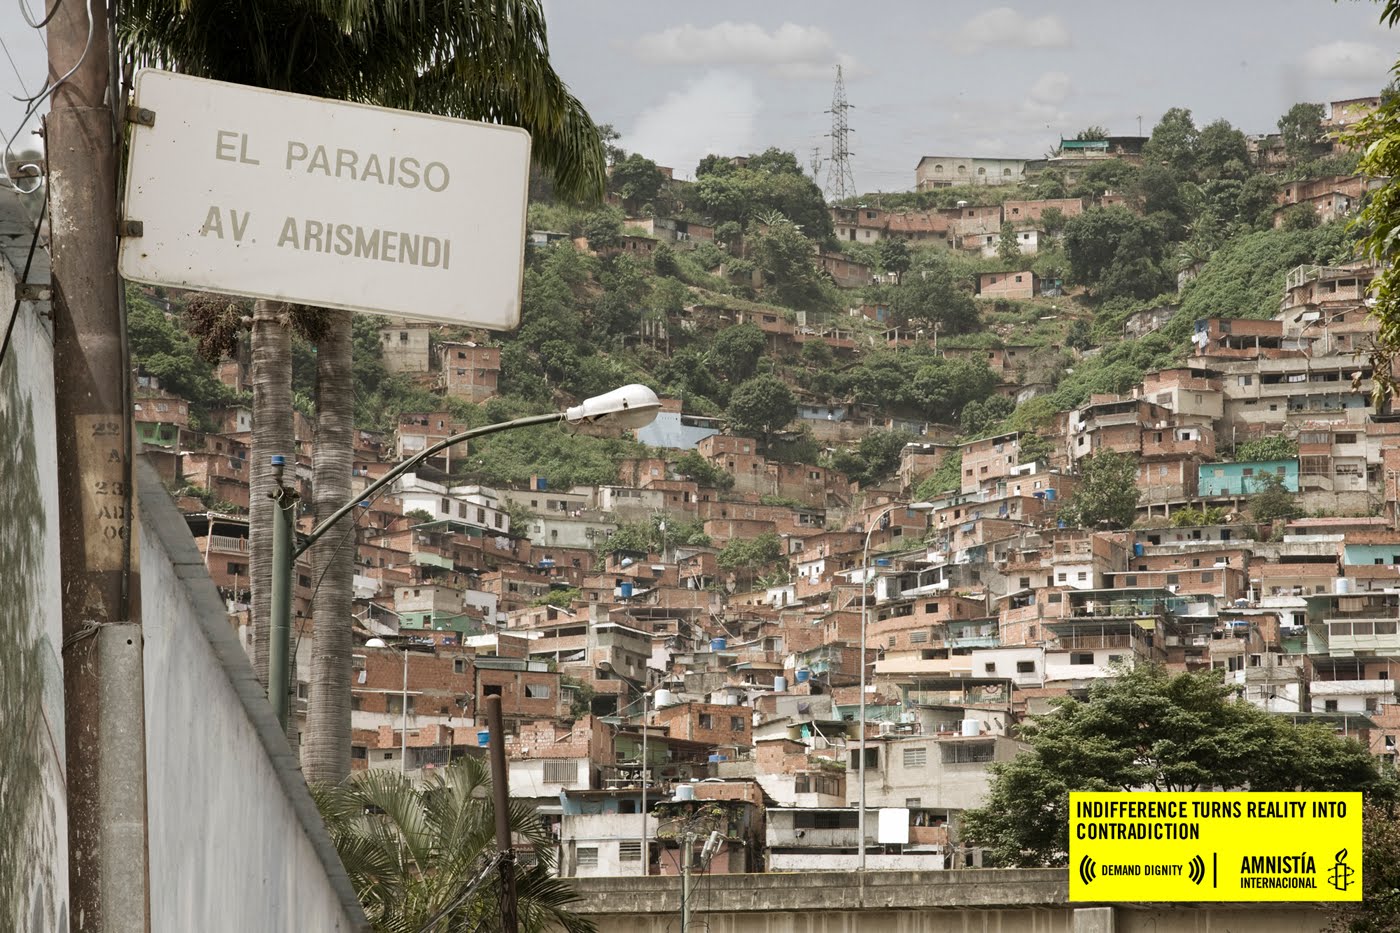 http://2.bp.blogspot.com/_b96m0hLJpBI/TIjyUgD9etI/AAAAAAAAIzU/L0-hAIuOQhA/s1600/Amnesty+International:+Urbanization,+El+Paraiso.jpeg